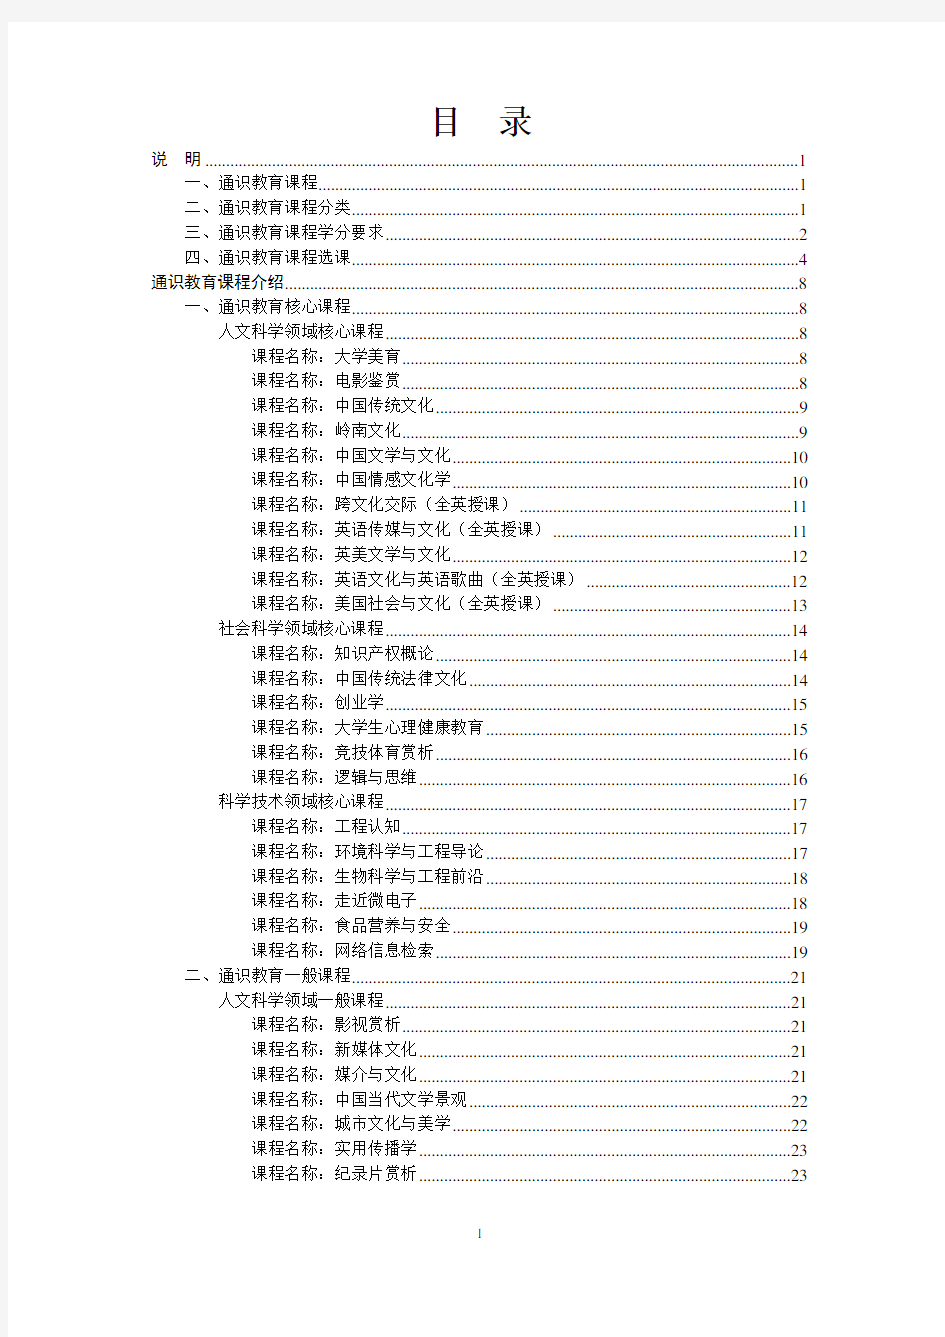 华南理工大学2013-2014 学年度第二学期通识教育课程选课手册